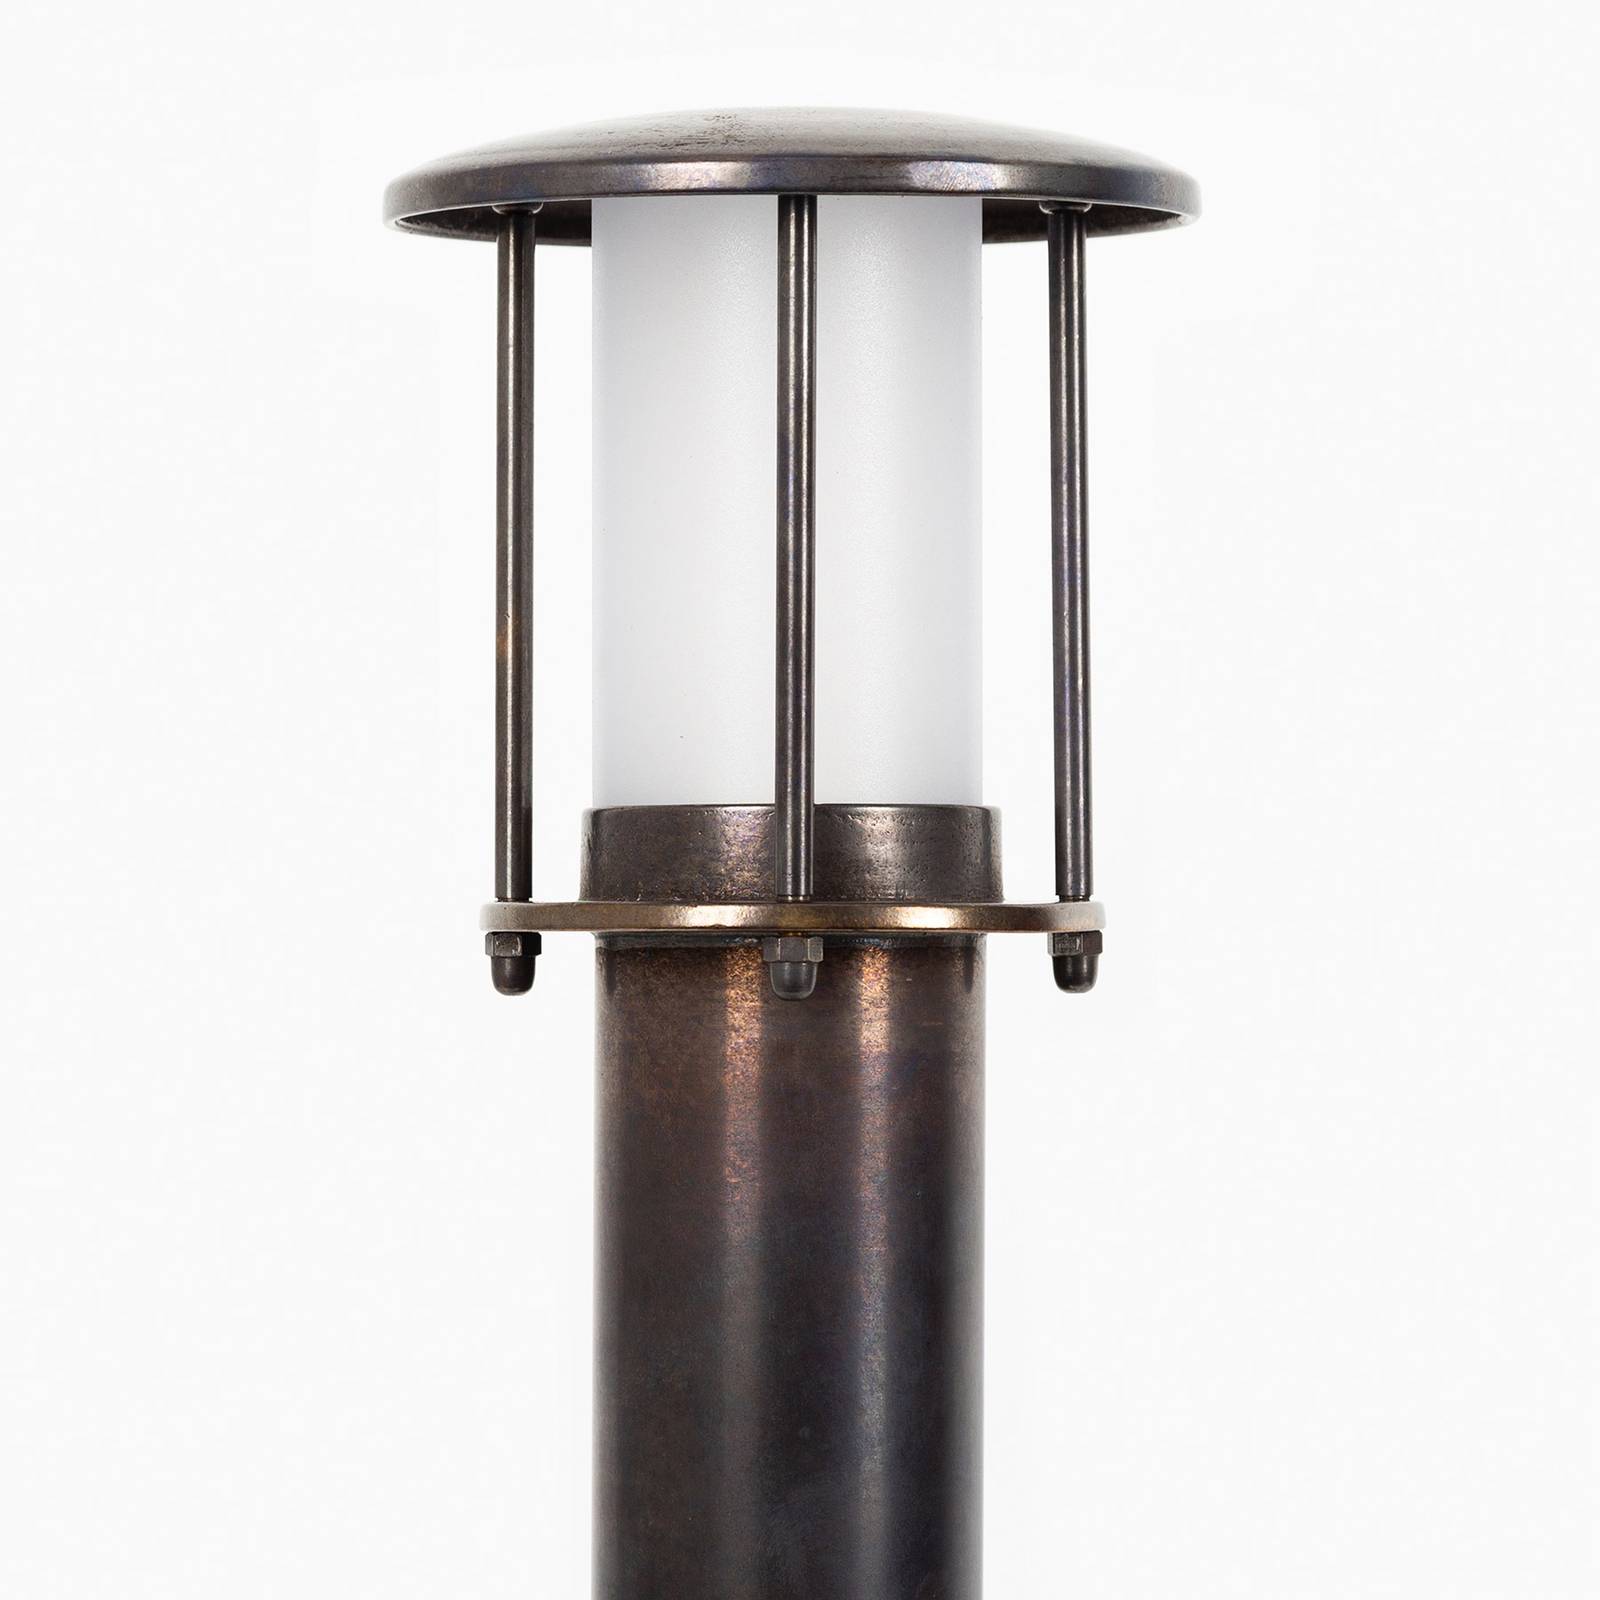 Wegelampe Resident 2 aus Messing, bronze von K.S. Verlichting